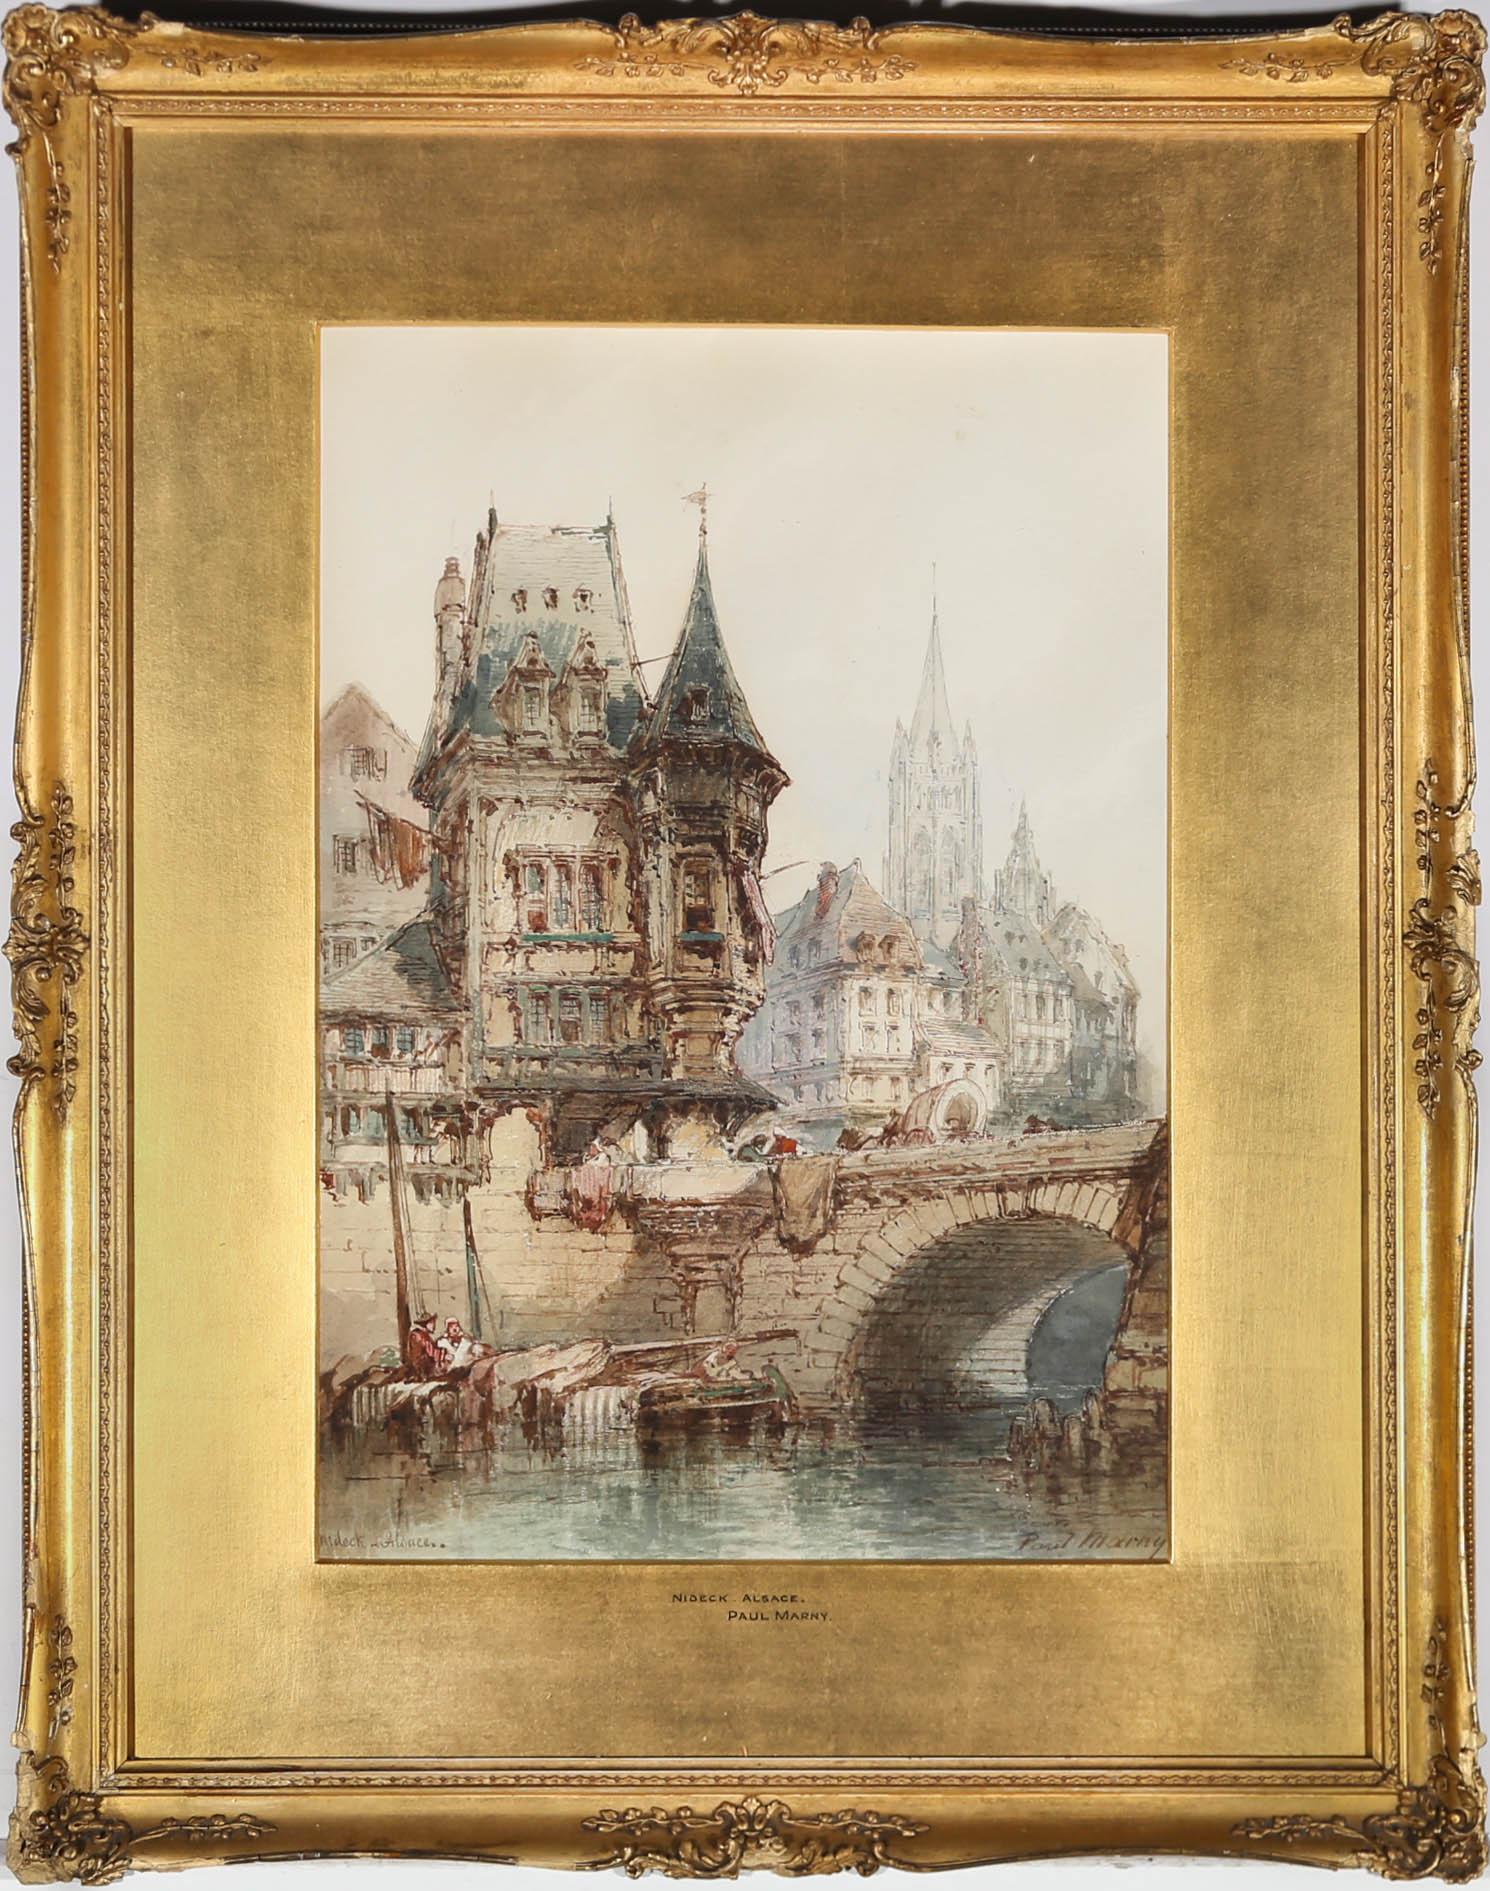 Une charmante vue du 19e siècle de Nideck, en Alsace, en France. L'artiste a merveilleusement capturé l'architecture complexe et la nature animée de la ville. L'artiste a signé en bas à droite et inscrit le lieu en bas à gauche. Le tableau a été